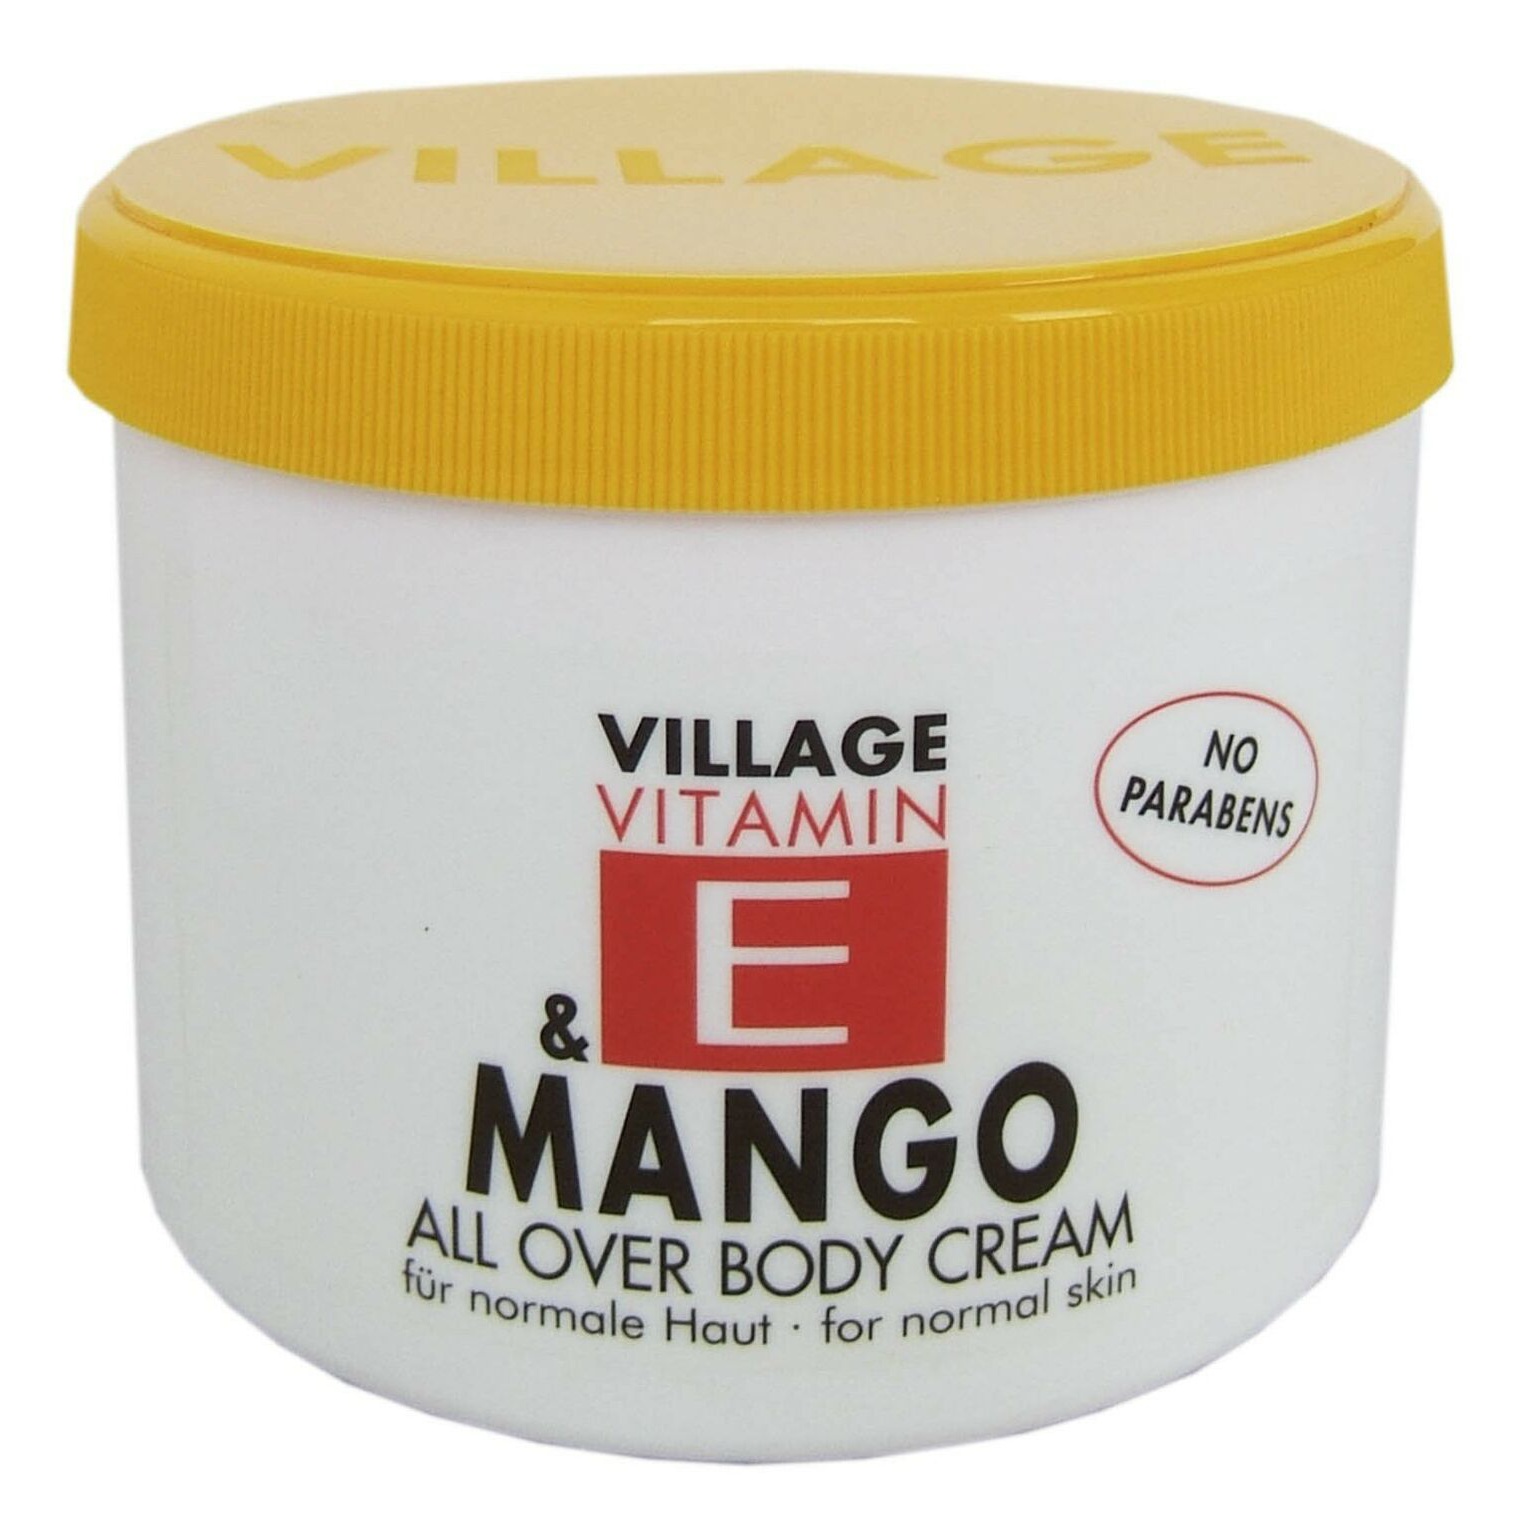 Village Vitamin E & Mango Body Cream